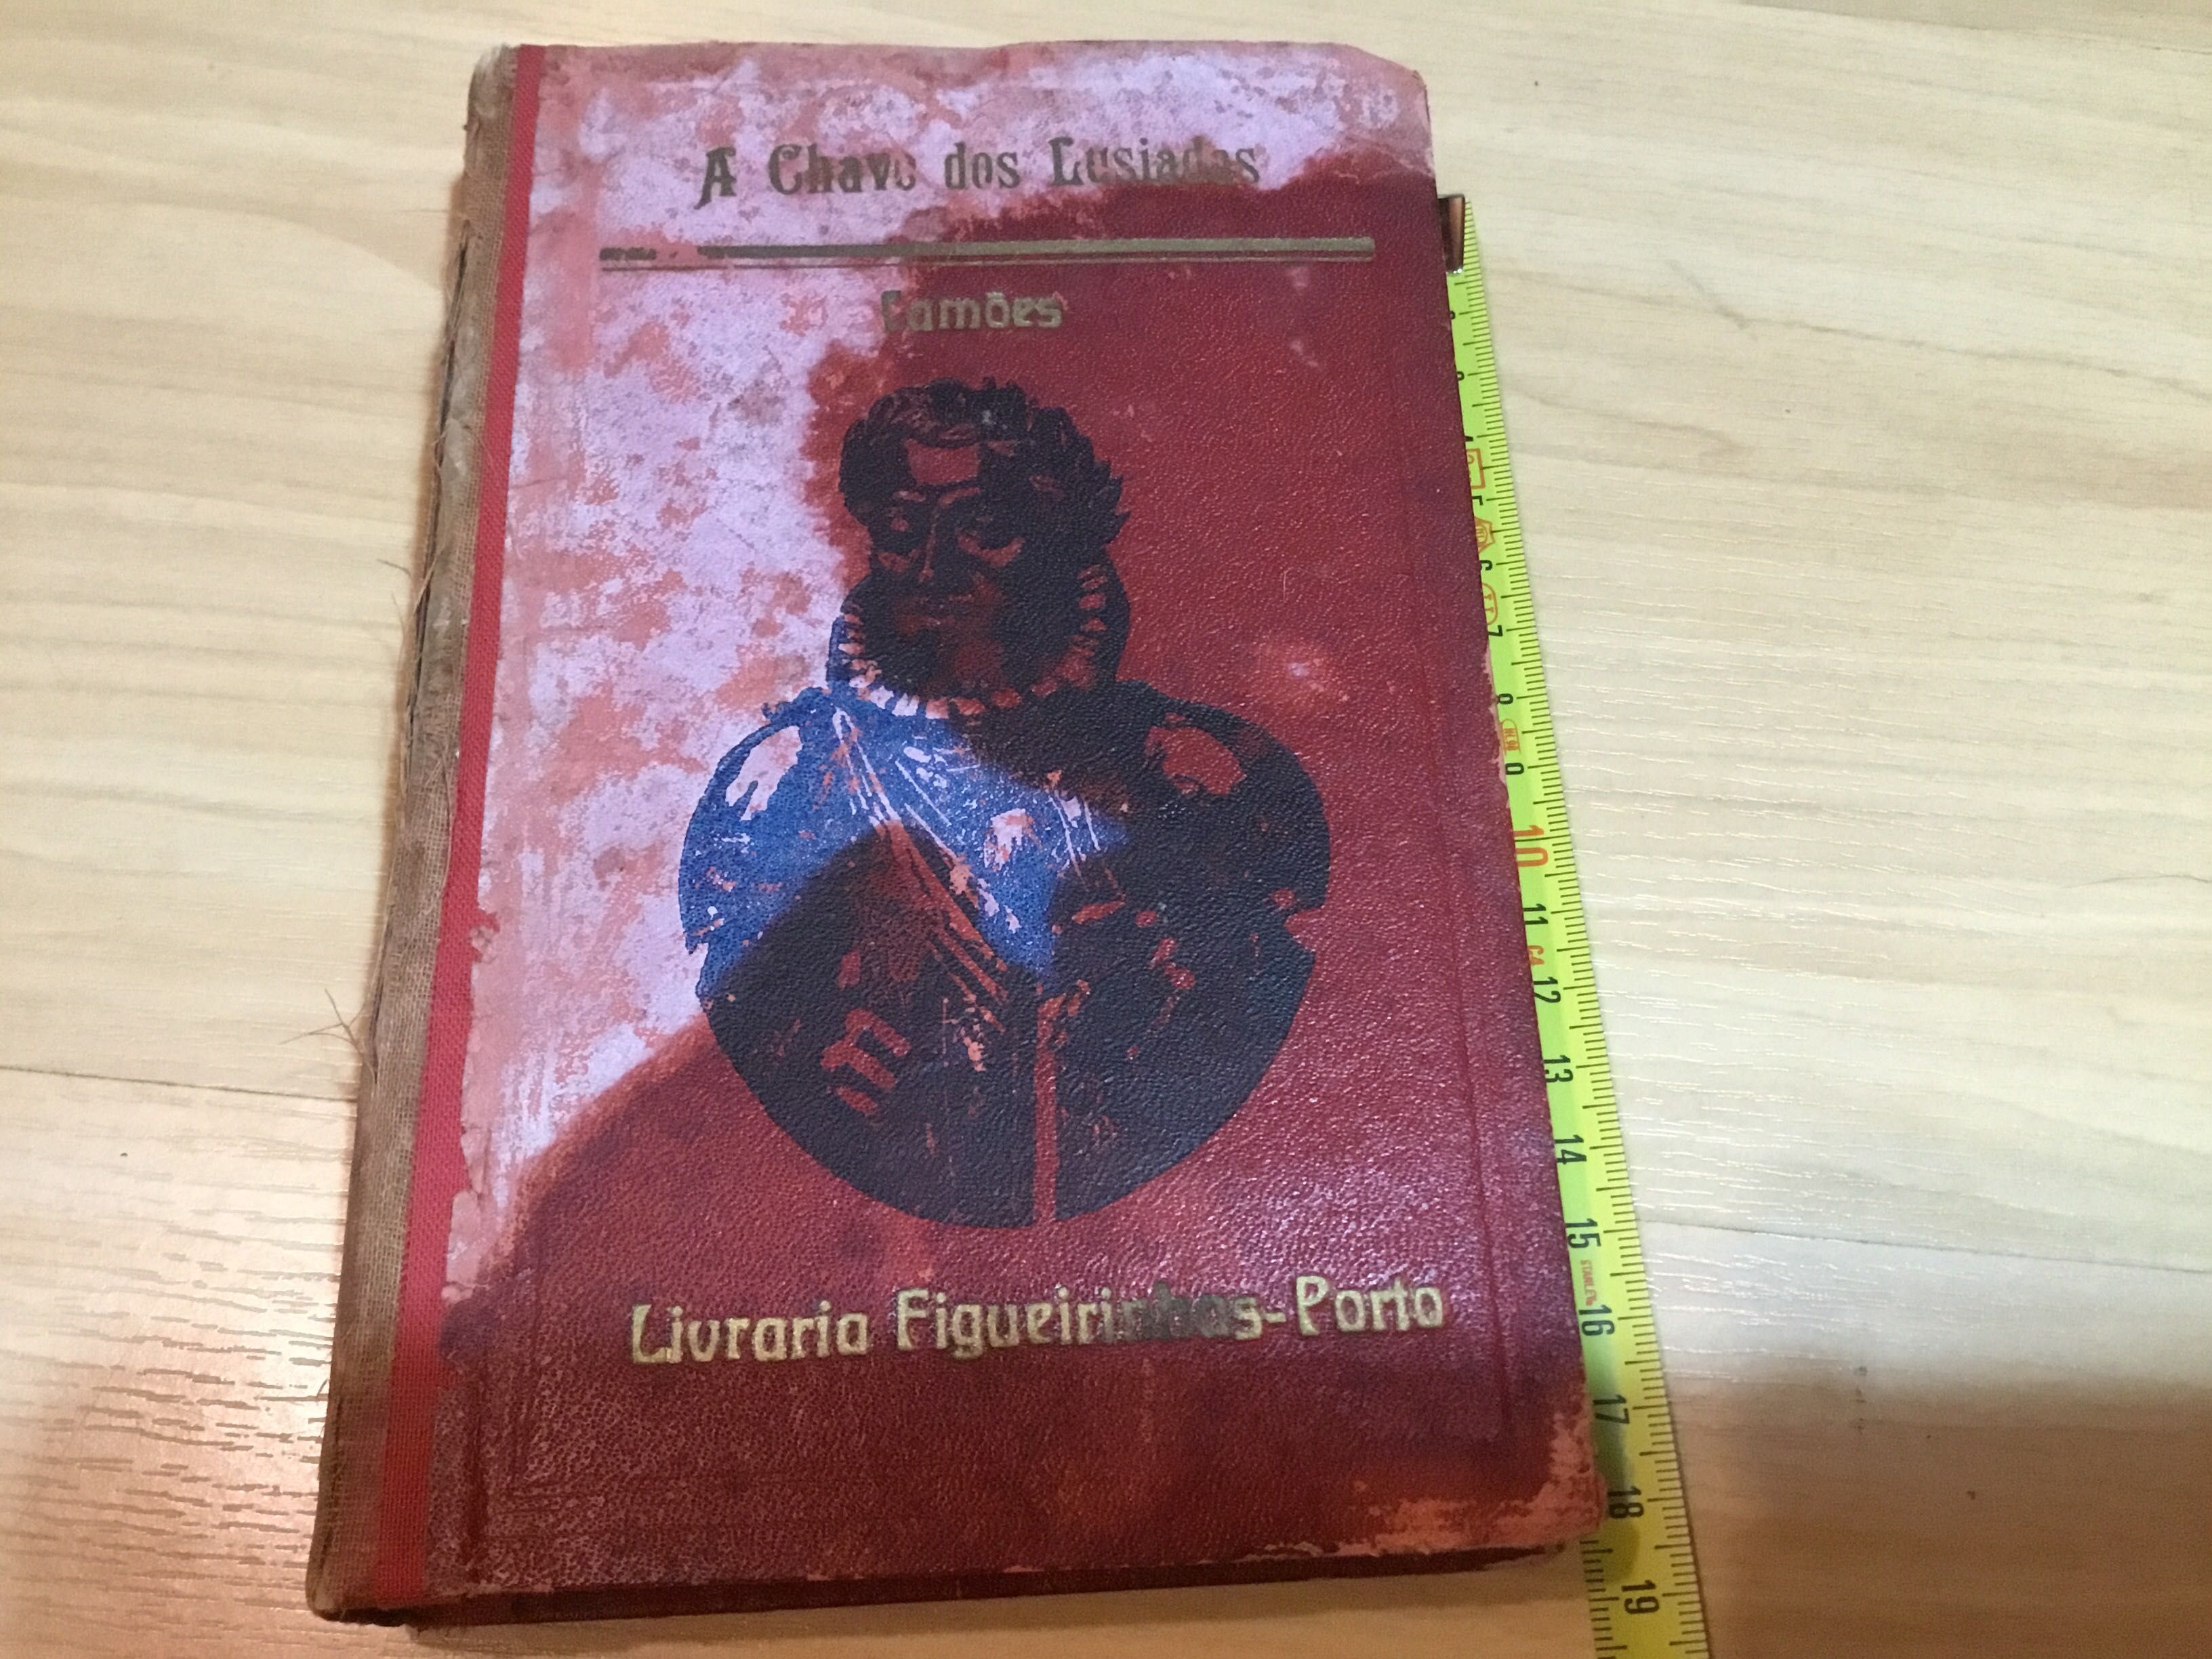 Livro antigo “A chave dos Lusíadas” da livraria Figueirinhas